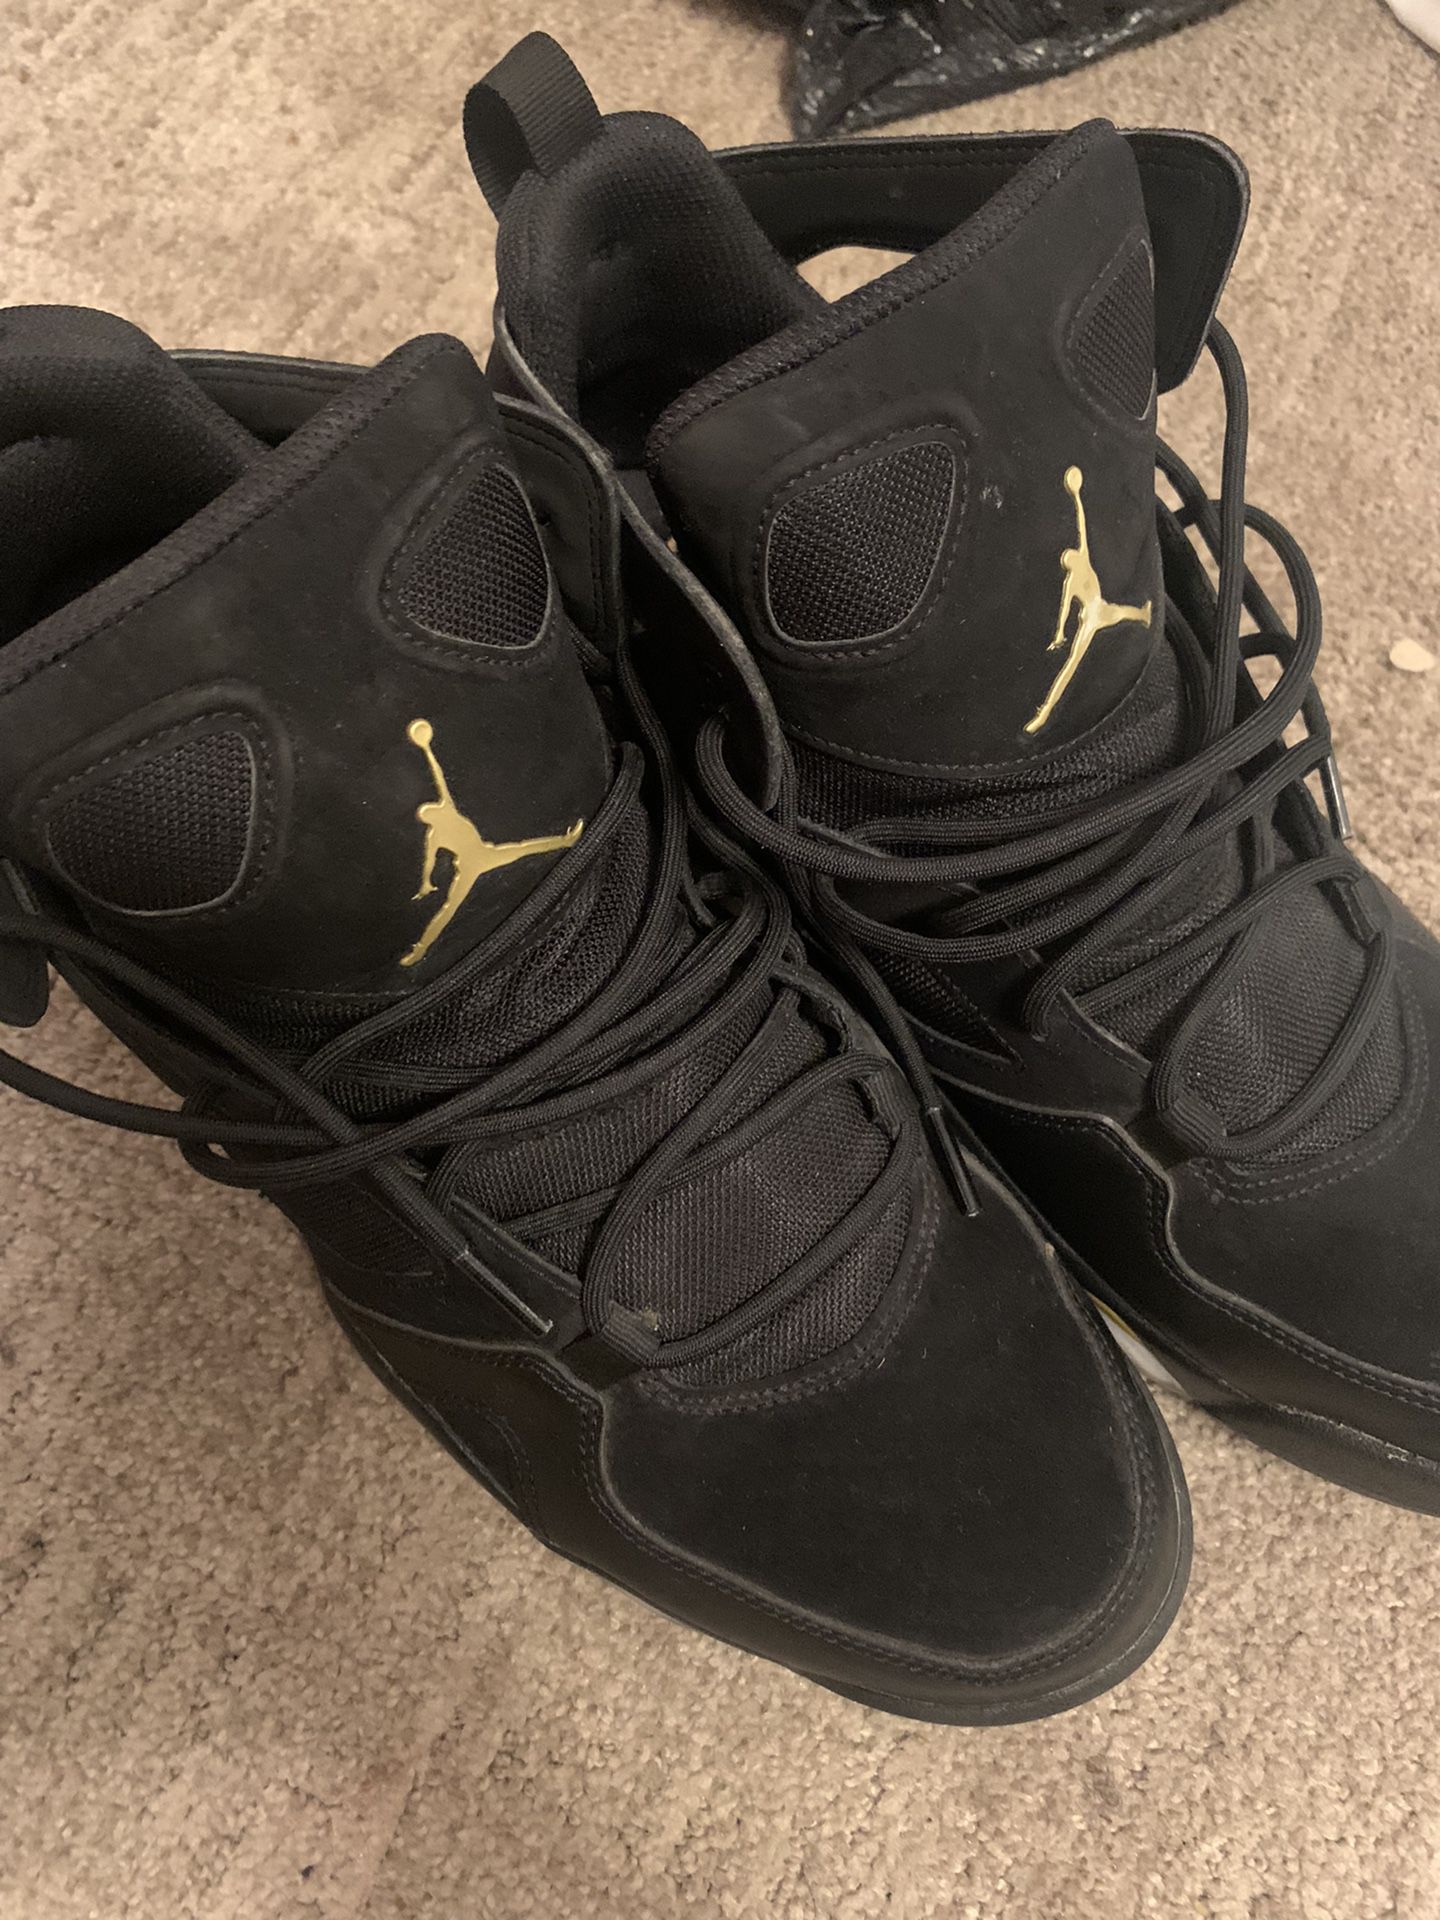 Jordan 6 Gold And Black